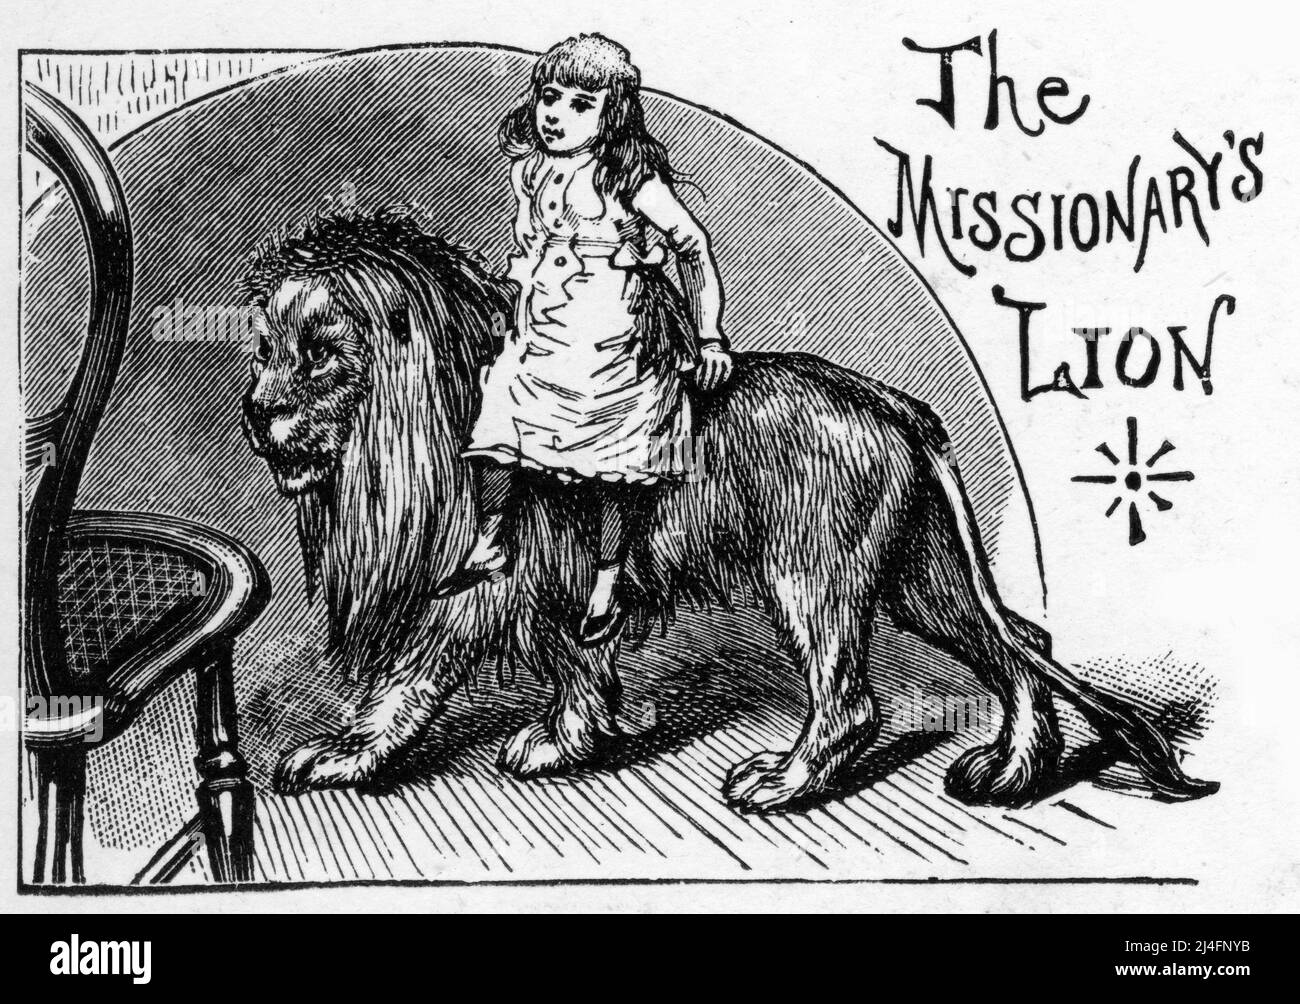 Gravure du lion du missionnaire, don du roi d'Abyssinie, avec la fille du missionnaire sur son dos Banque D'Images